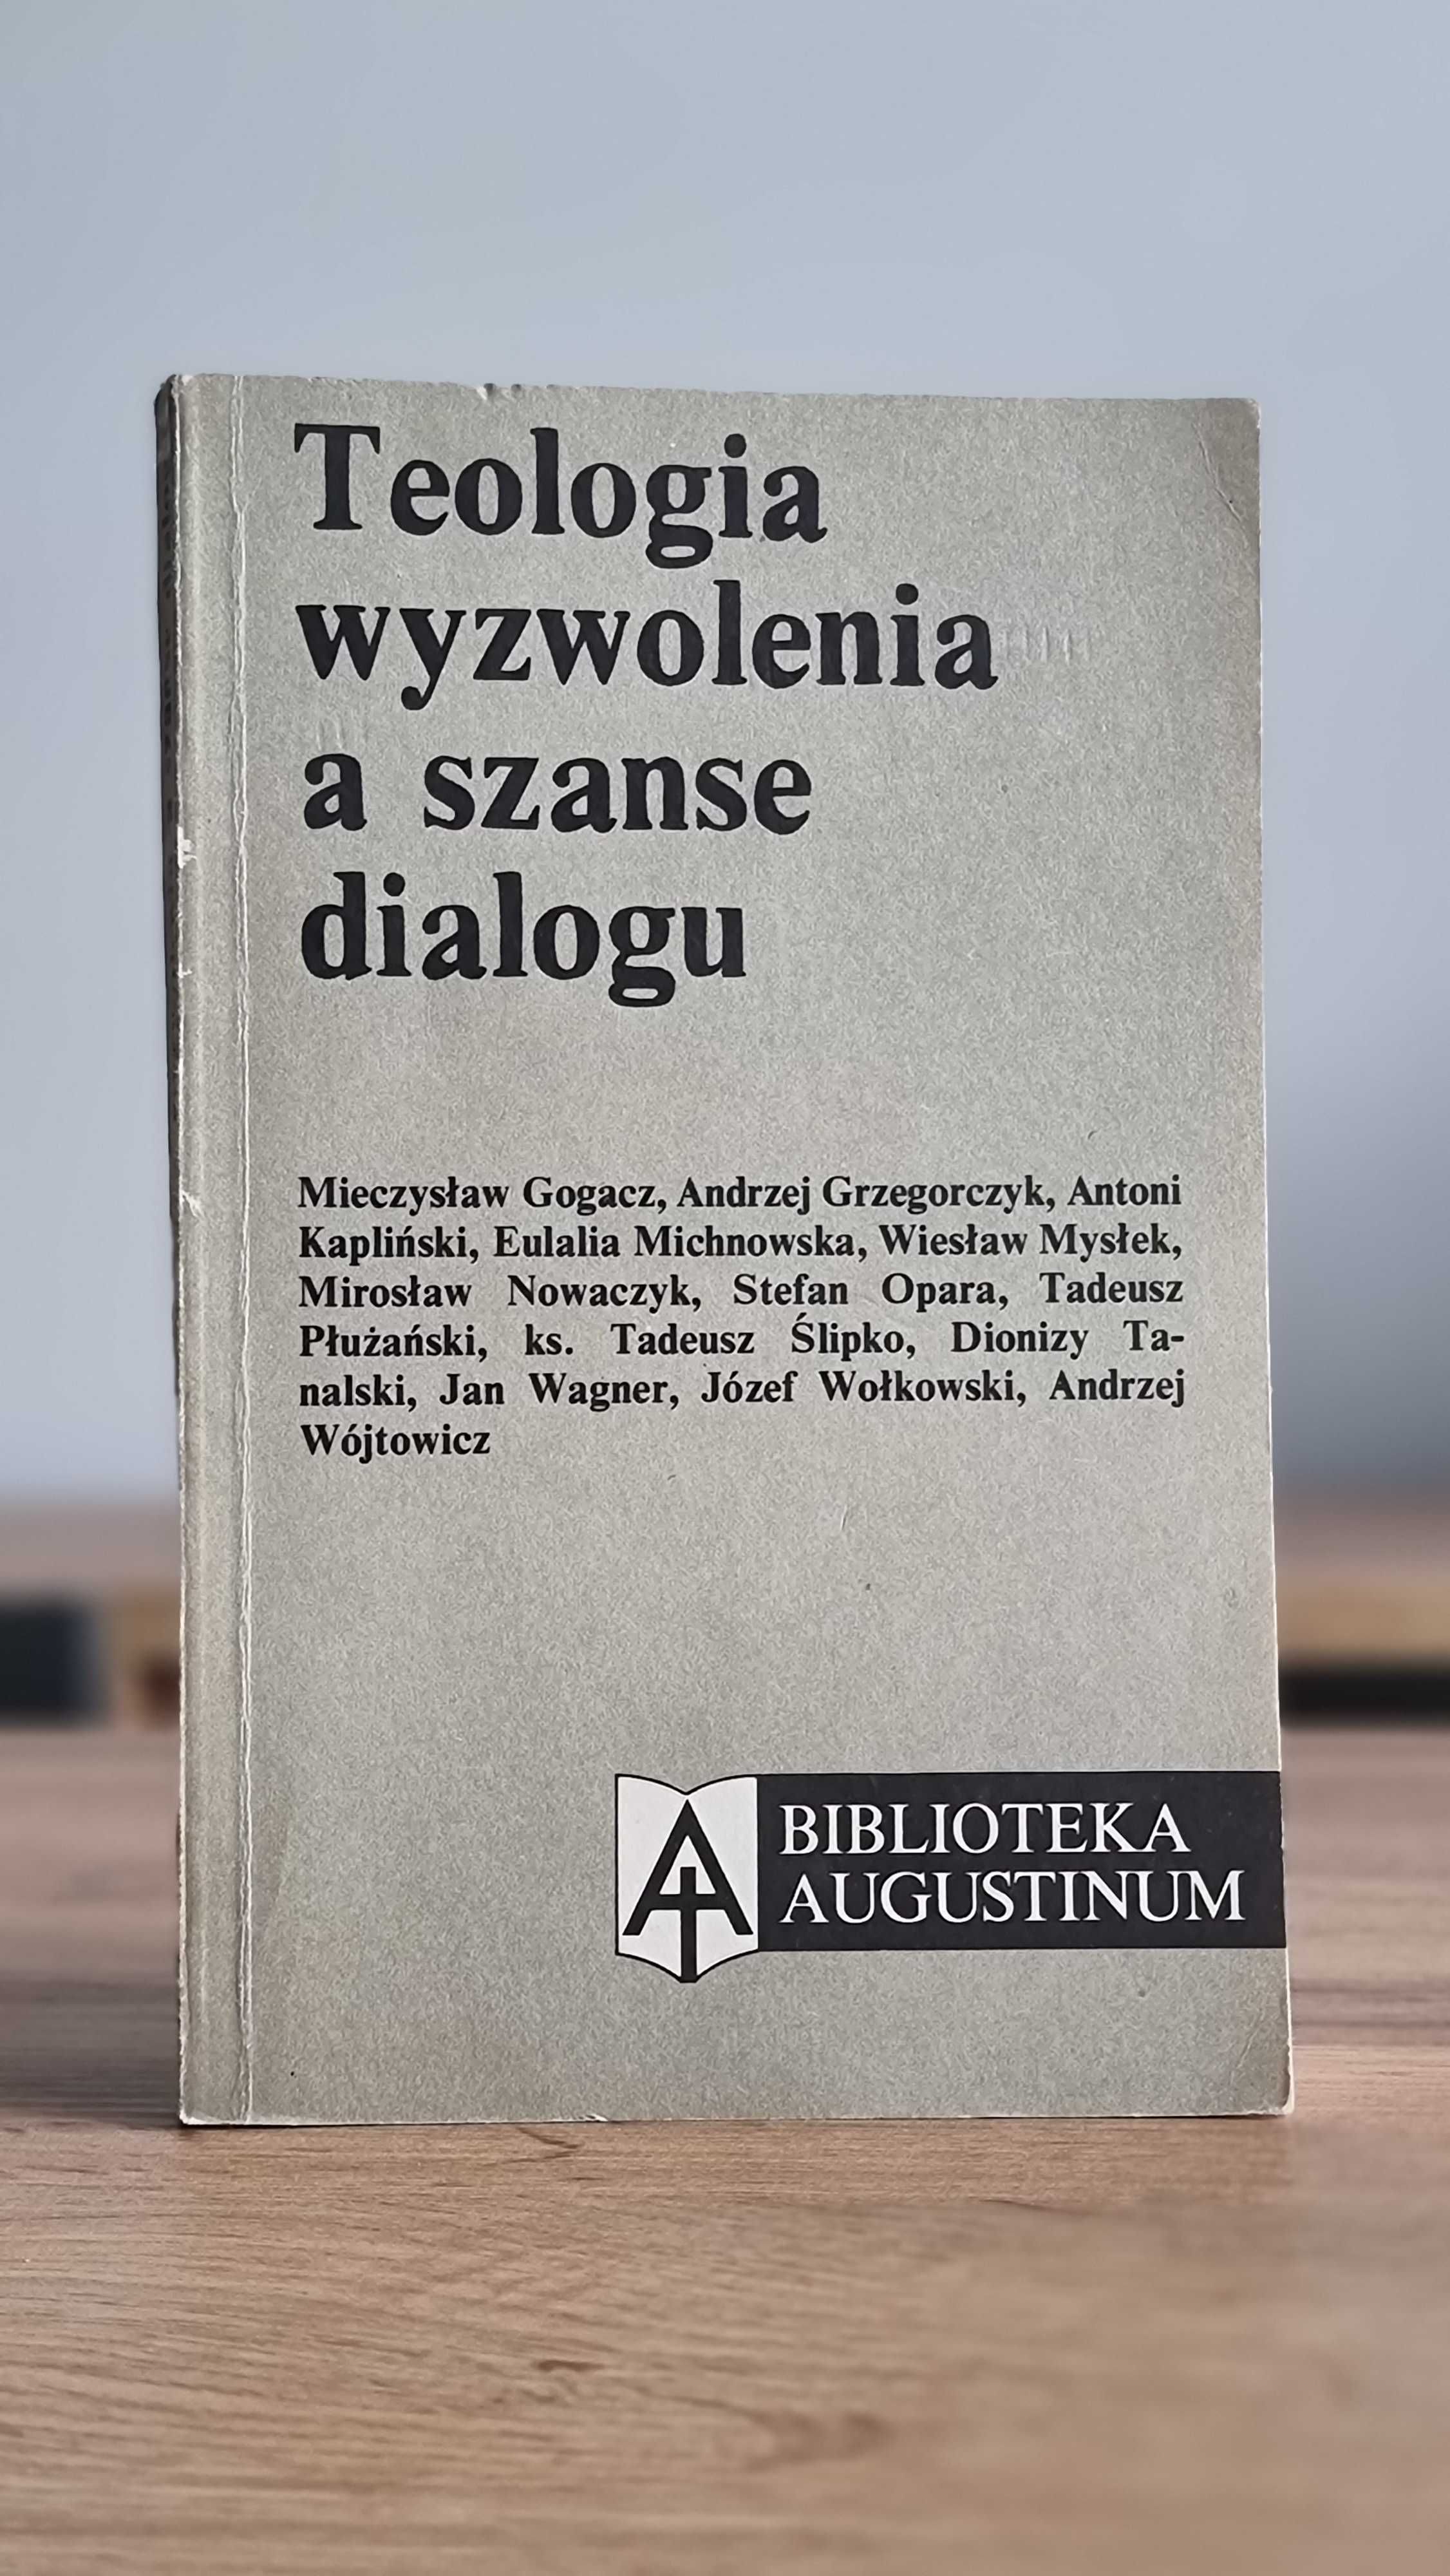 "Teologia wyzwolenia a szanse dialogu" - pod red. Józefa Wołkowskiego